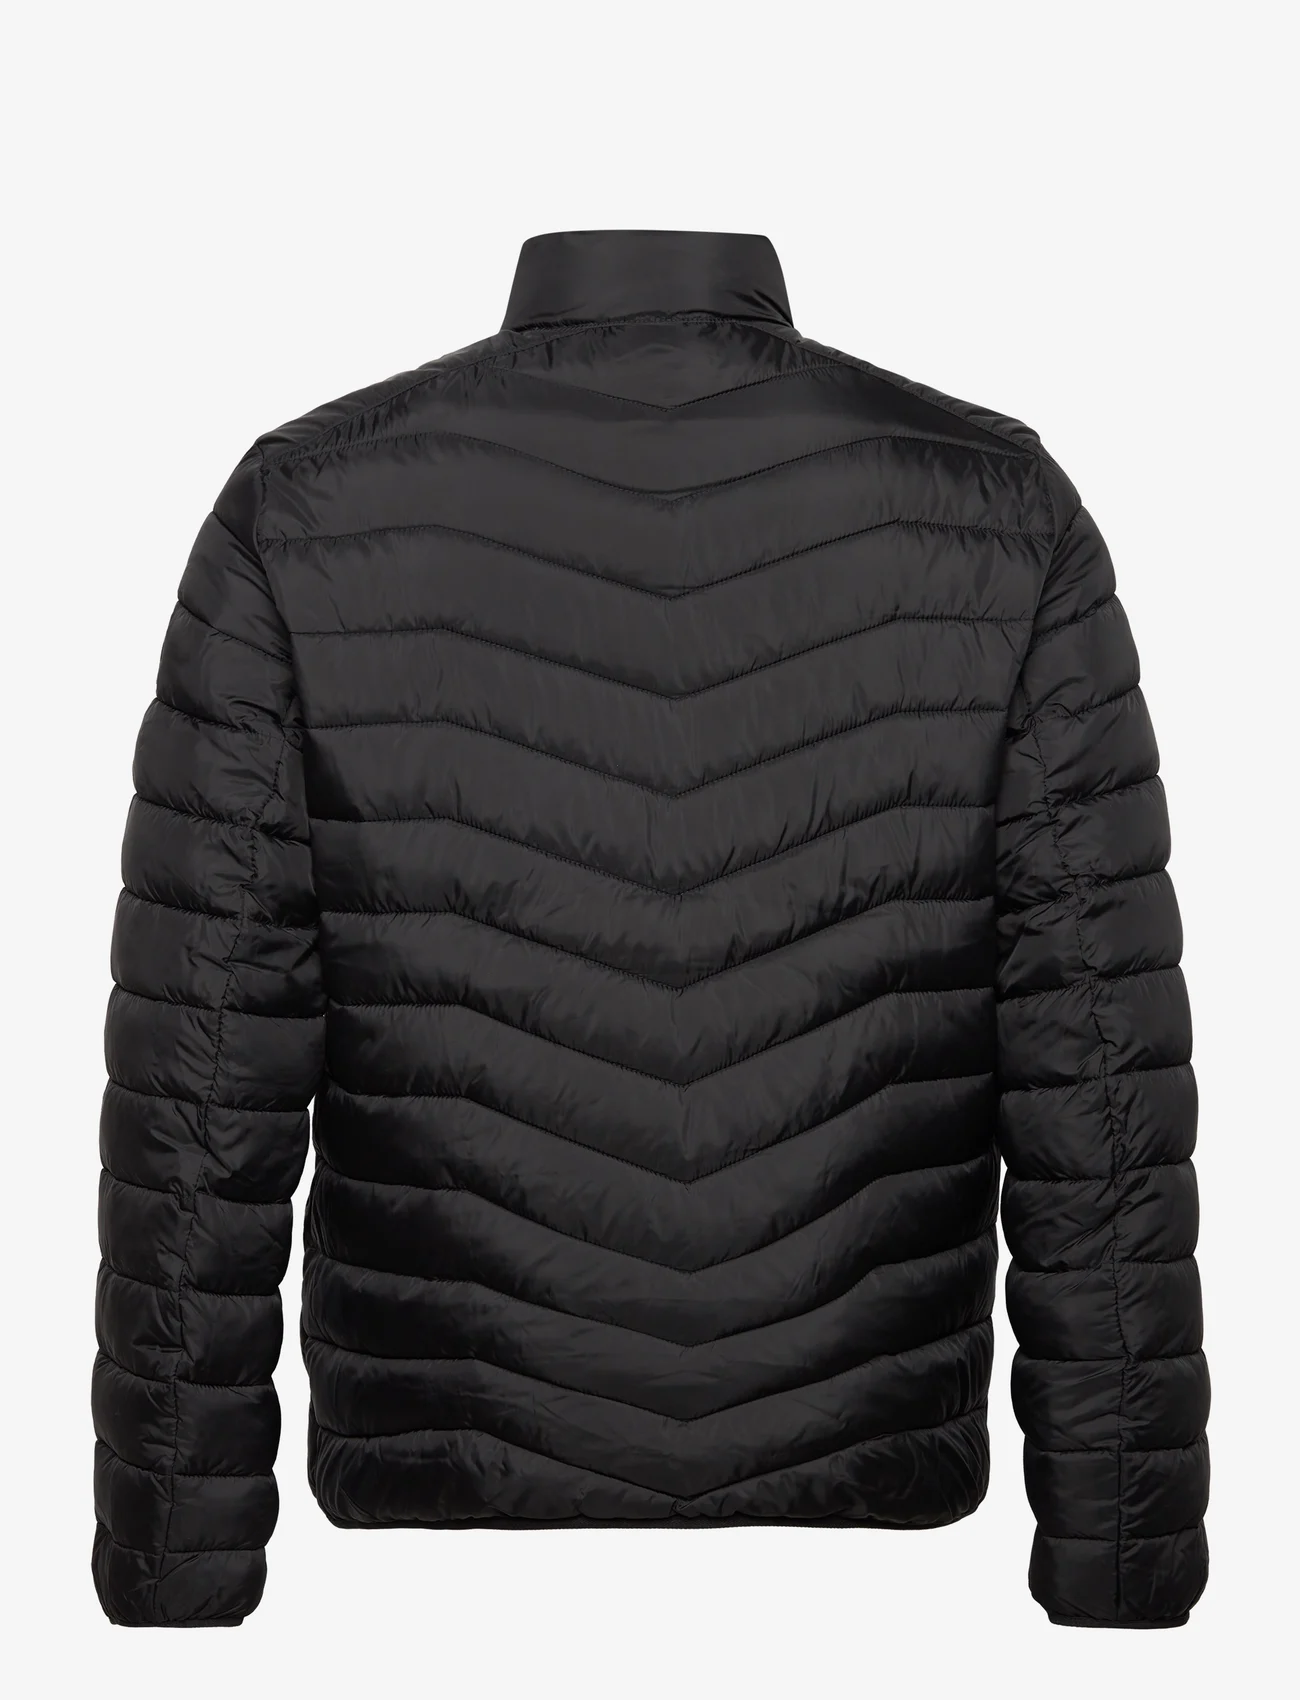 Tom Tailor - light weight jacket - vinterjackor - black - 1